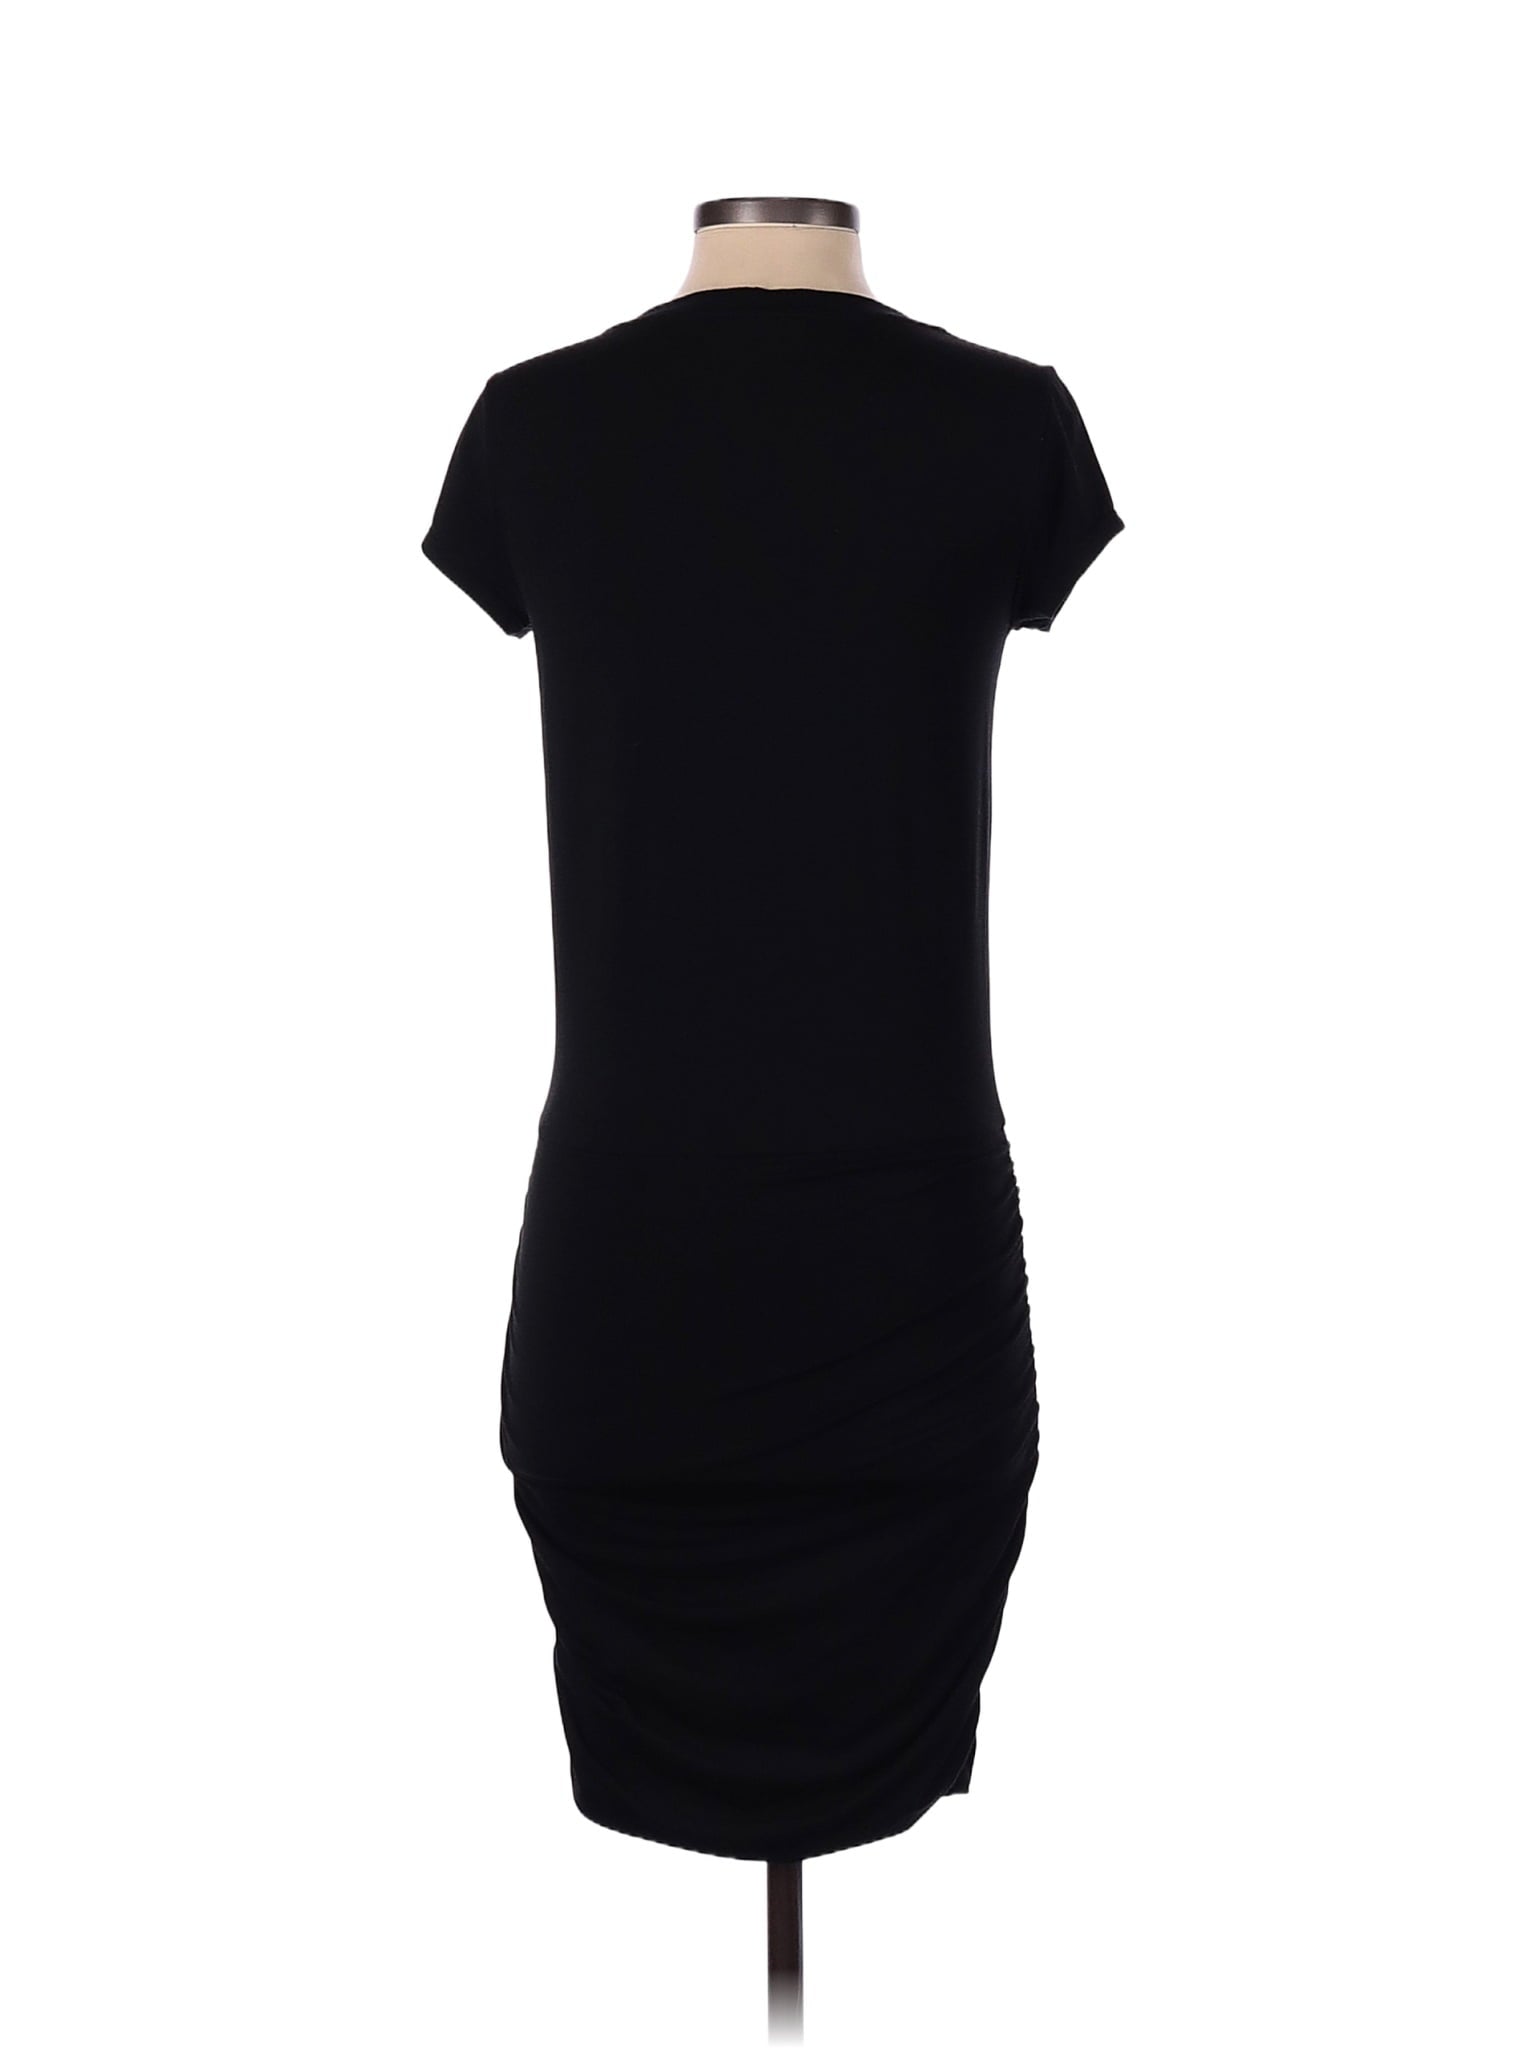 Casual Dress size - XXS